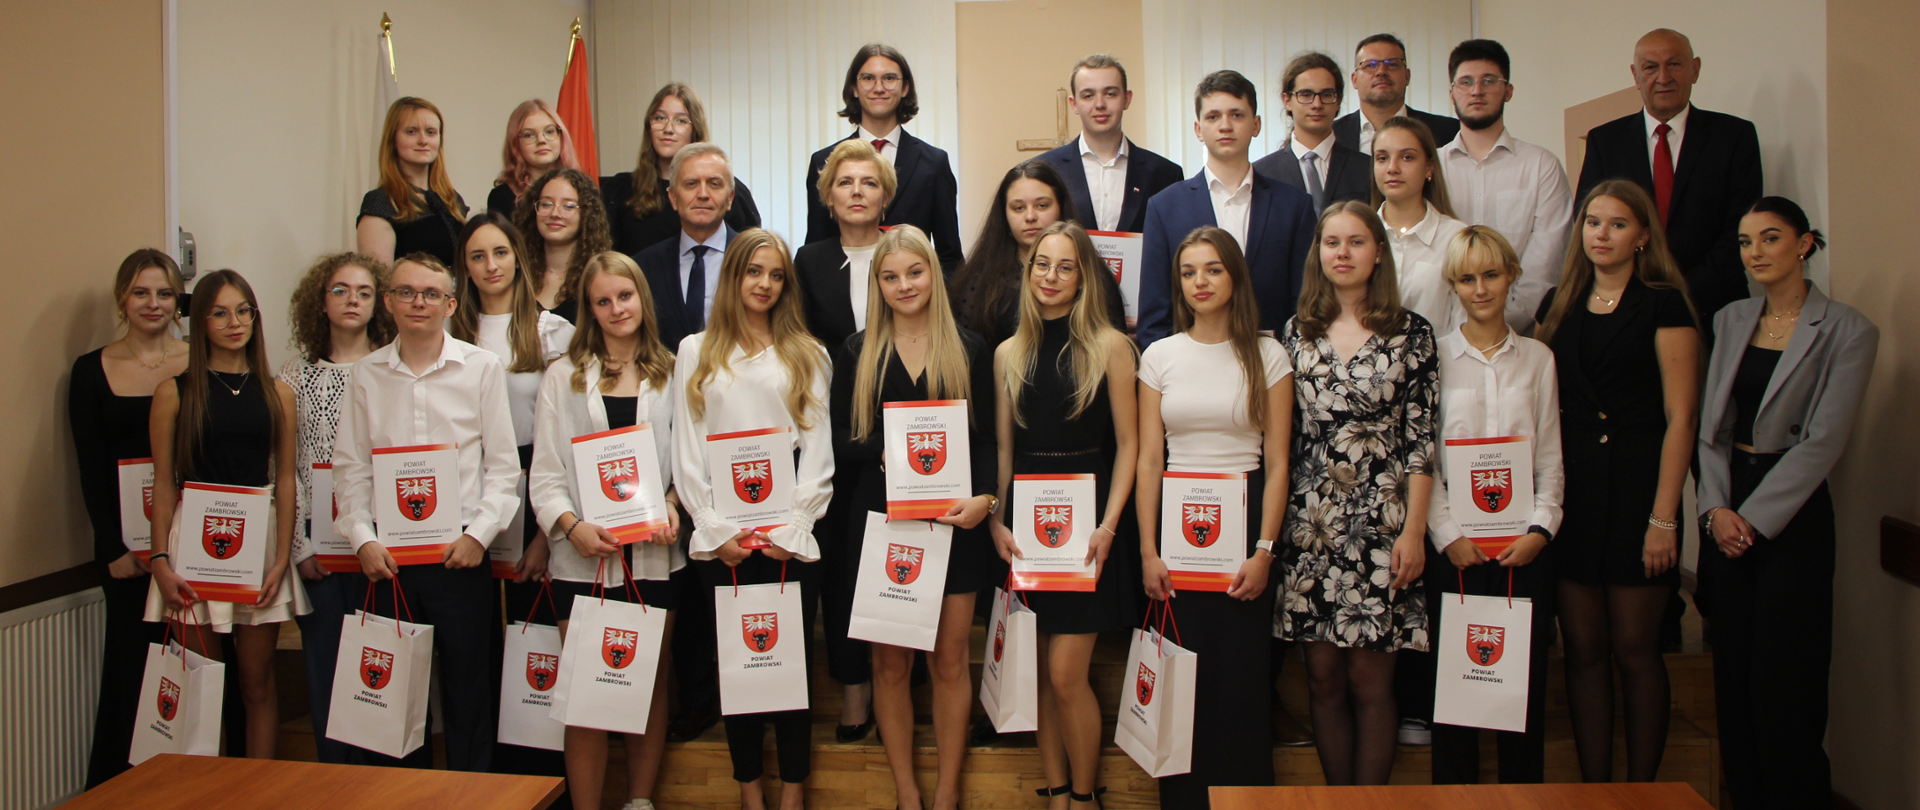 grupowe zdjęcie Starosty Zambrowskiego z nagrodzonymi stypendystami oraz dyrektorami szkół z terenu powiatu zambrowskiego